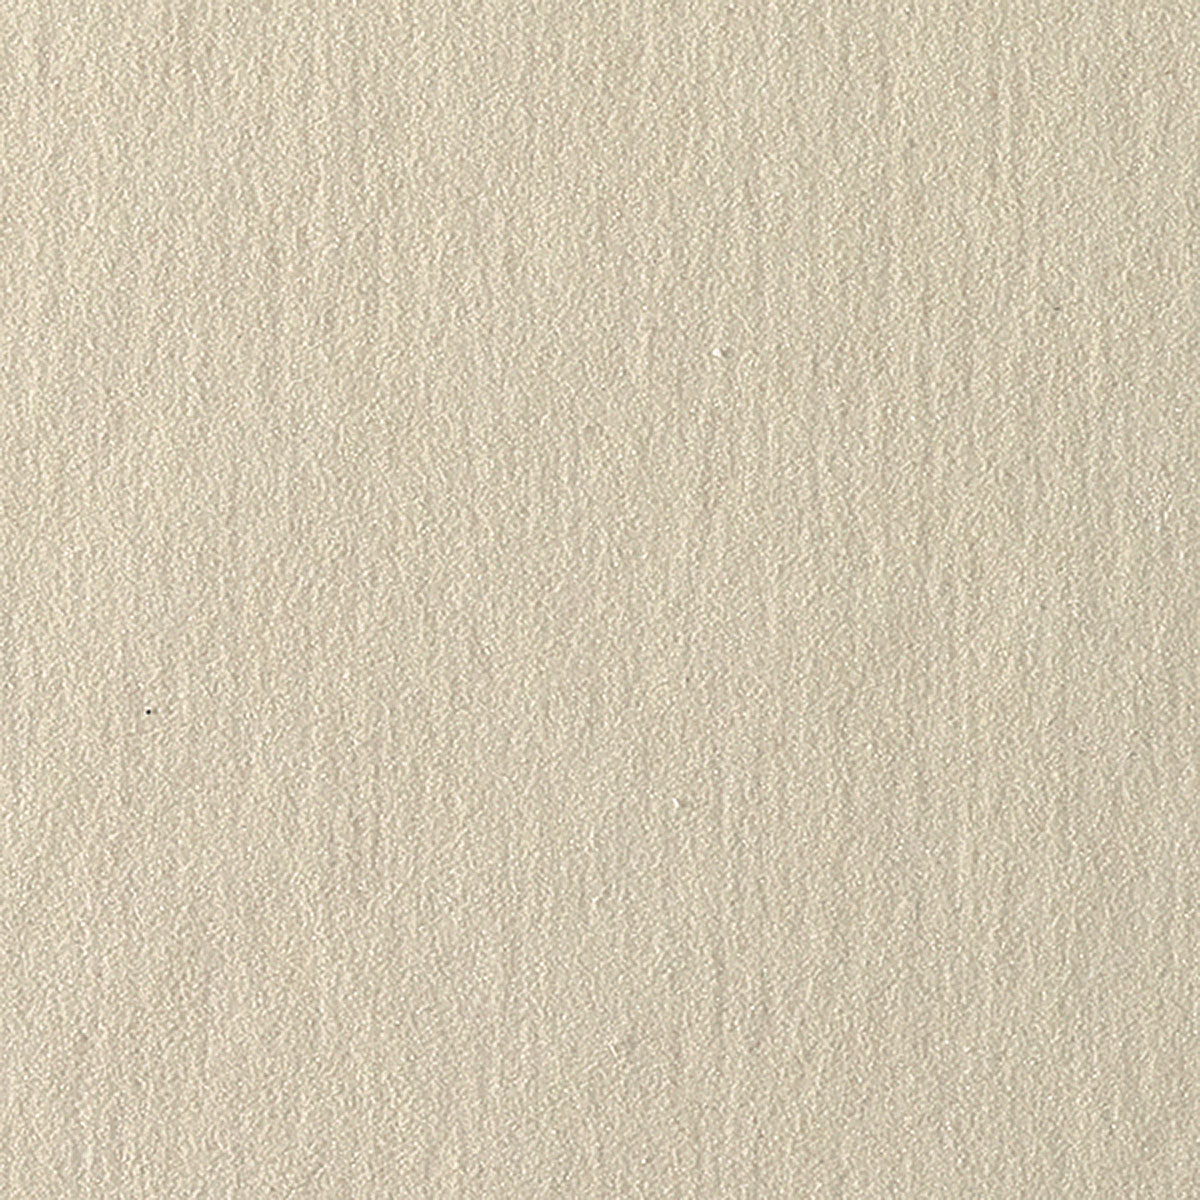 UART Sanded Pastel Paper Sheet Pack - 400 Grade 18 x 24